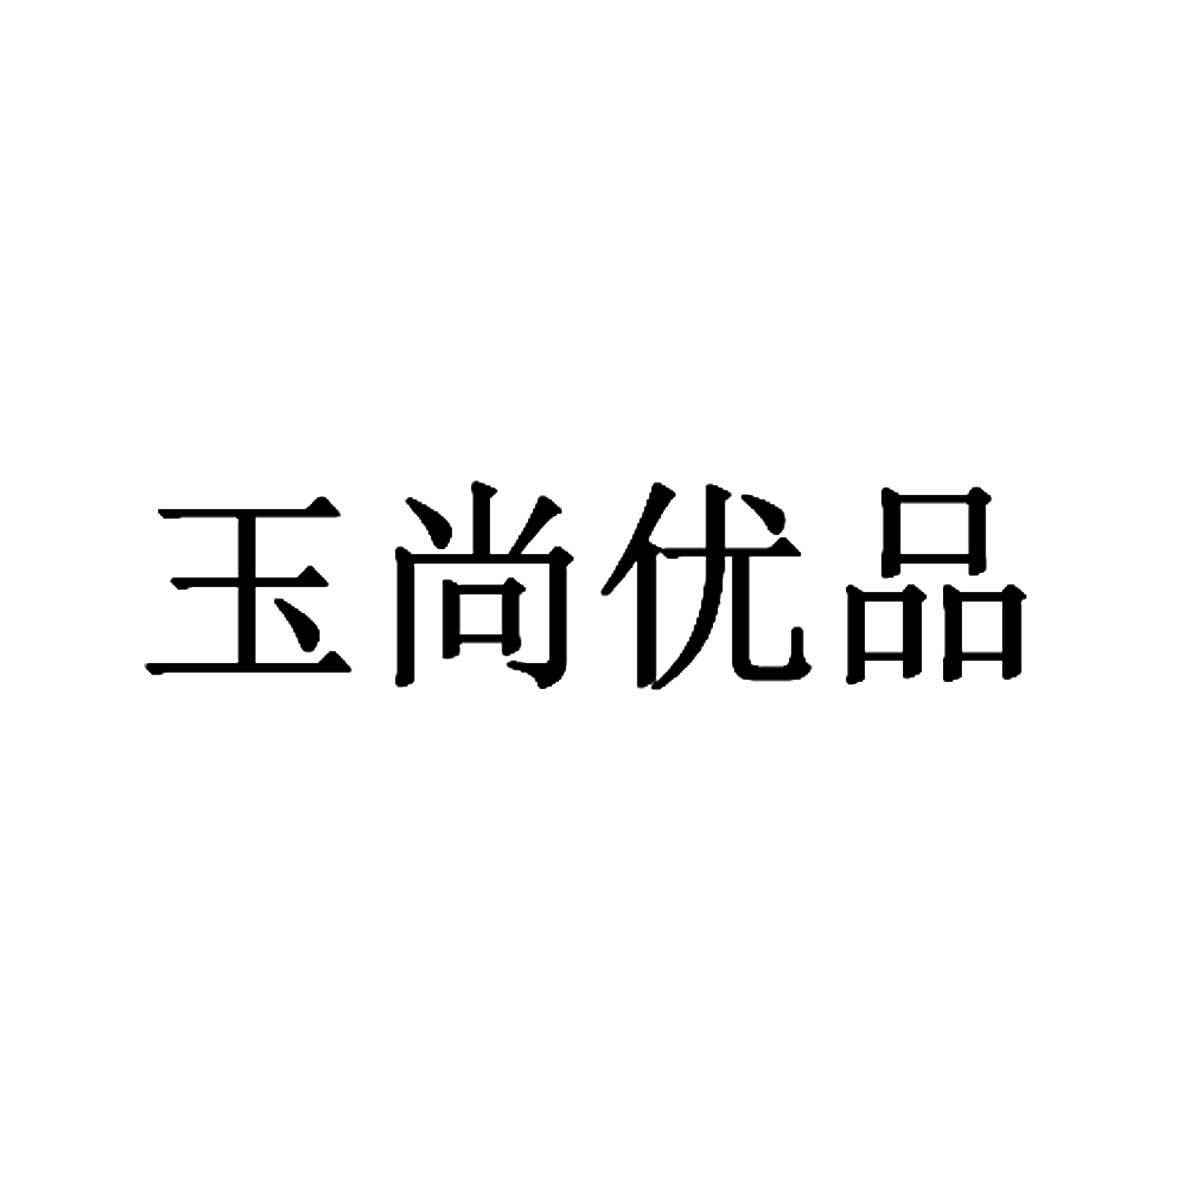 商标文字玉尚优品商标注册号 18940648,商标申请人北京玉尚优品文化